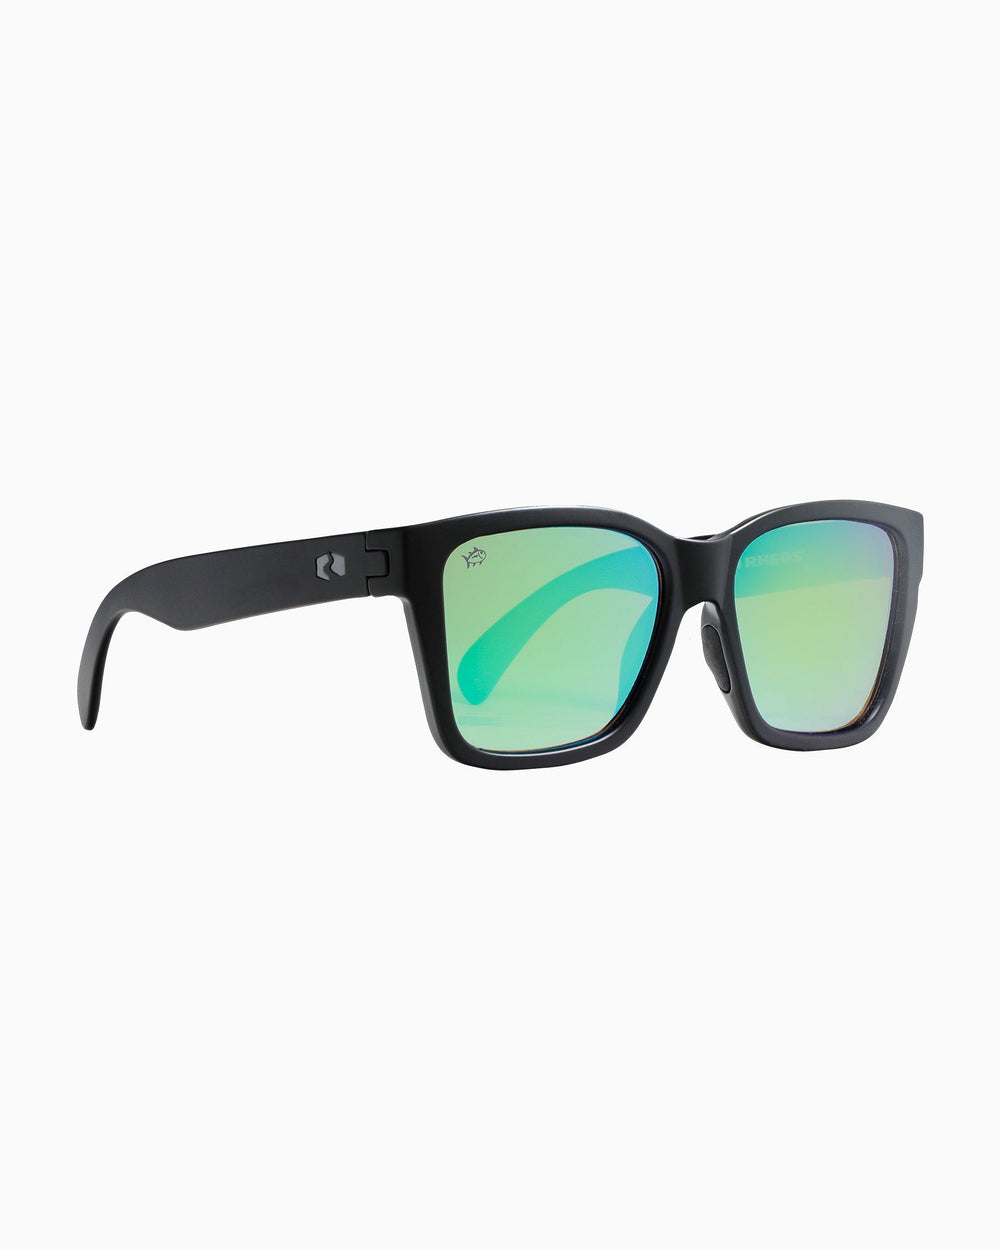 Polarized Square Frame Sunglasses for Men & Women